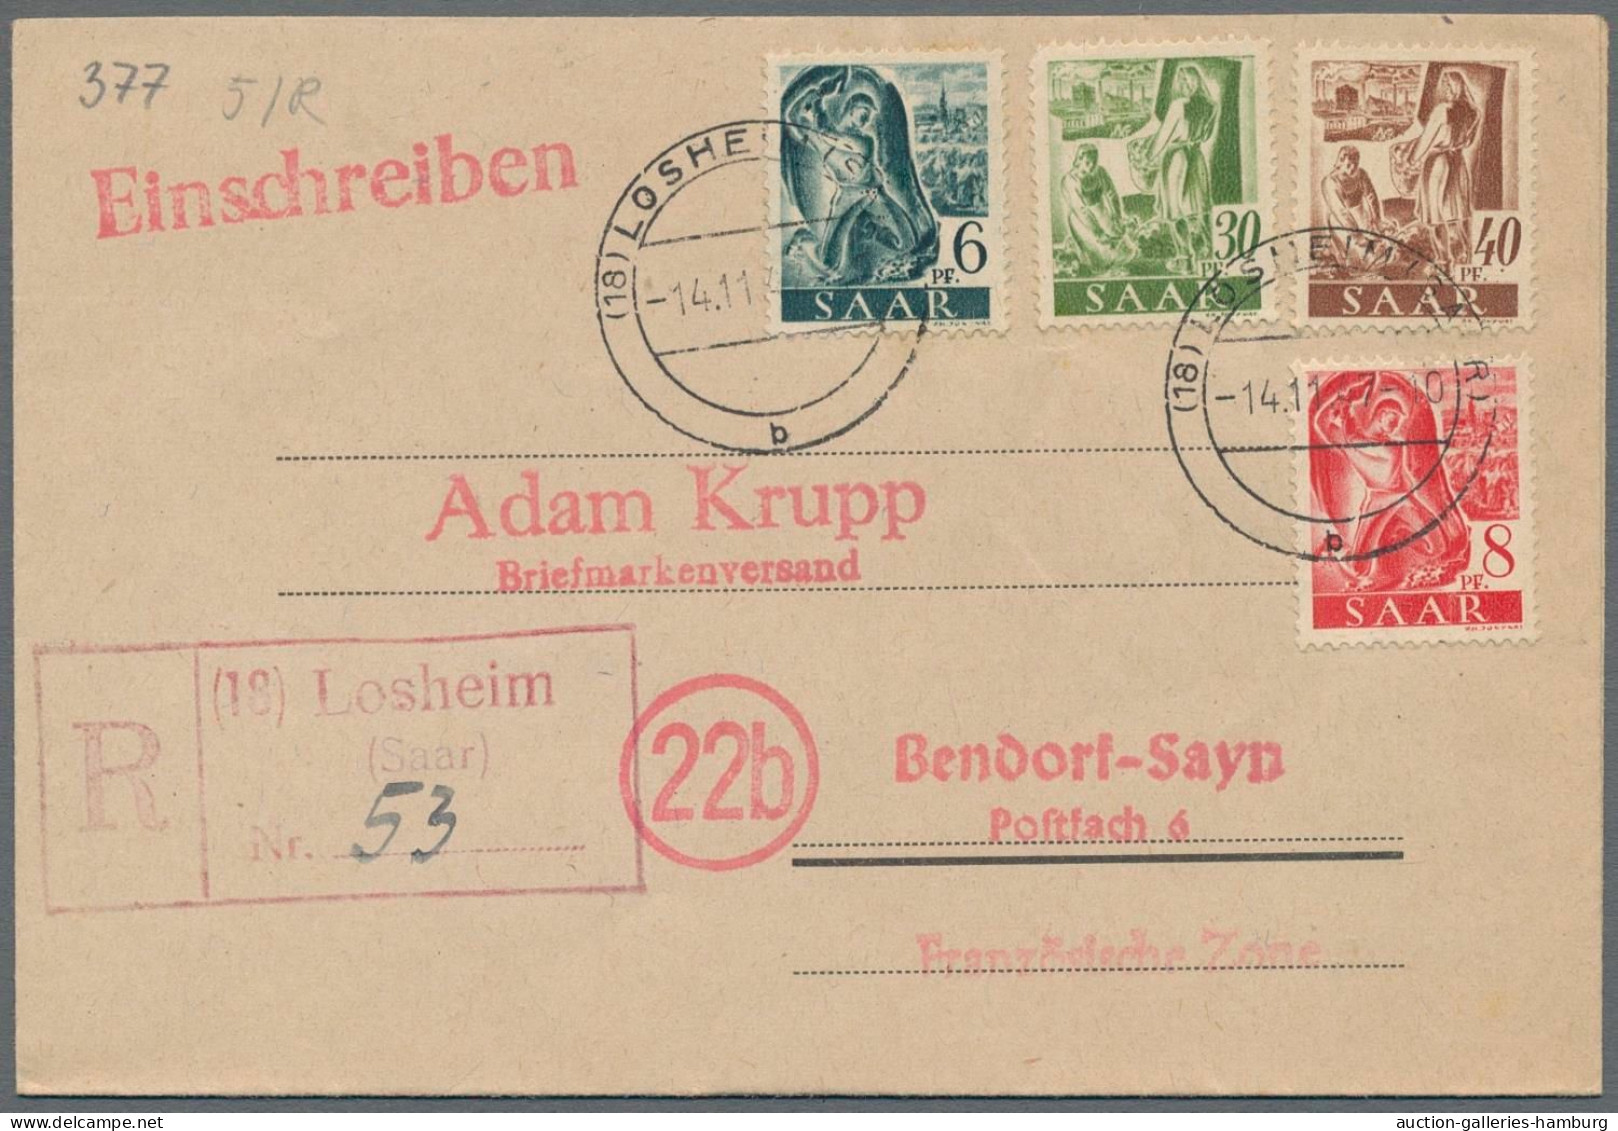 Saarland und OPD Saarbrücken: 1945-1959, STEMPEL A-Z, vermutlich einer der ausfü